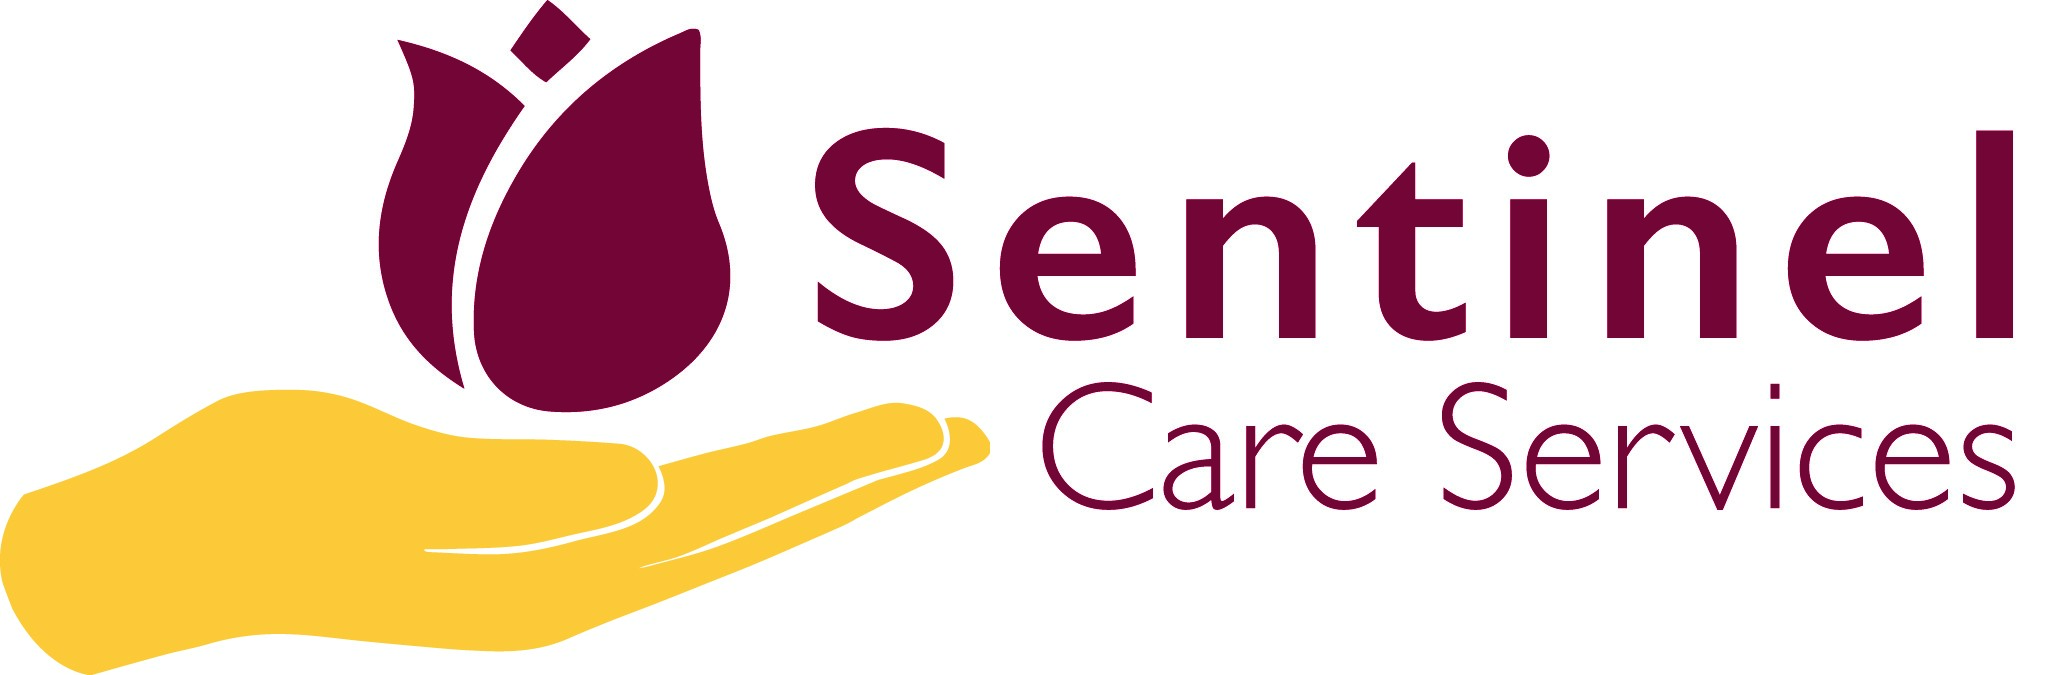 Company Sentinel Logo - Sentinel Care Services Logo Care Services